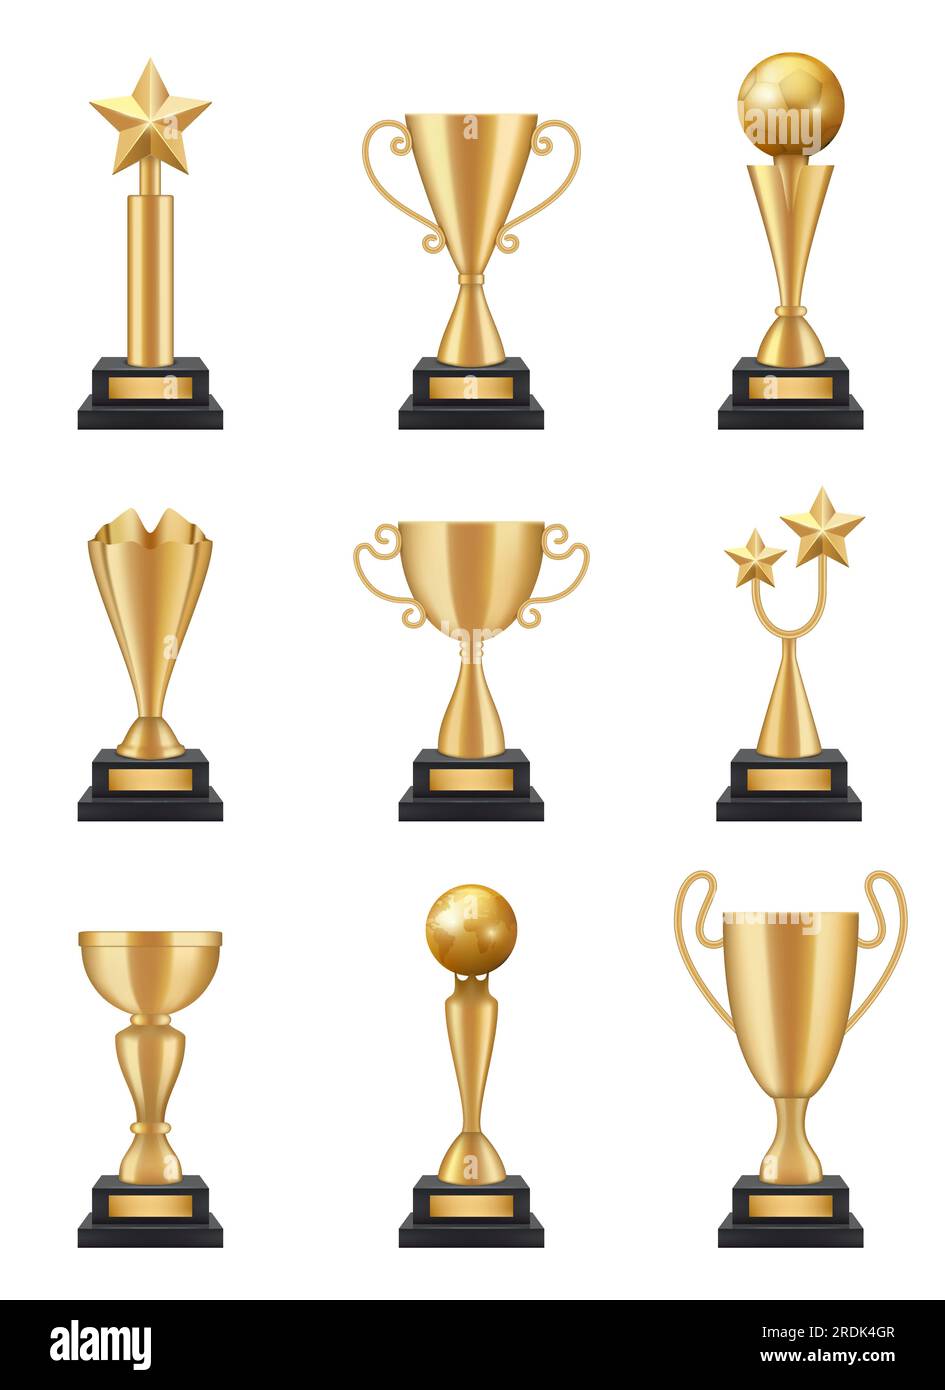 Goldener Pokal realistisch. 3D Sportwettbewerb Sieger Trophäen Medaillen Vektorbilder isoliert. Pokal und Preis, Sportauszeichnung und Belohnung Stock Vektor